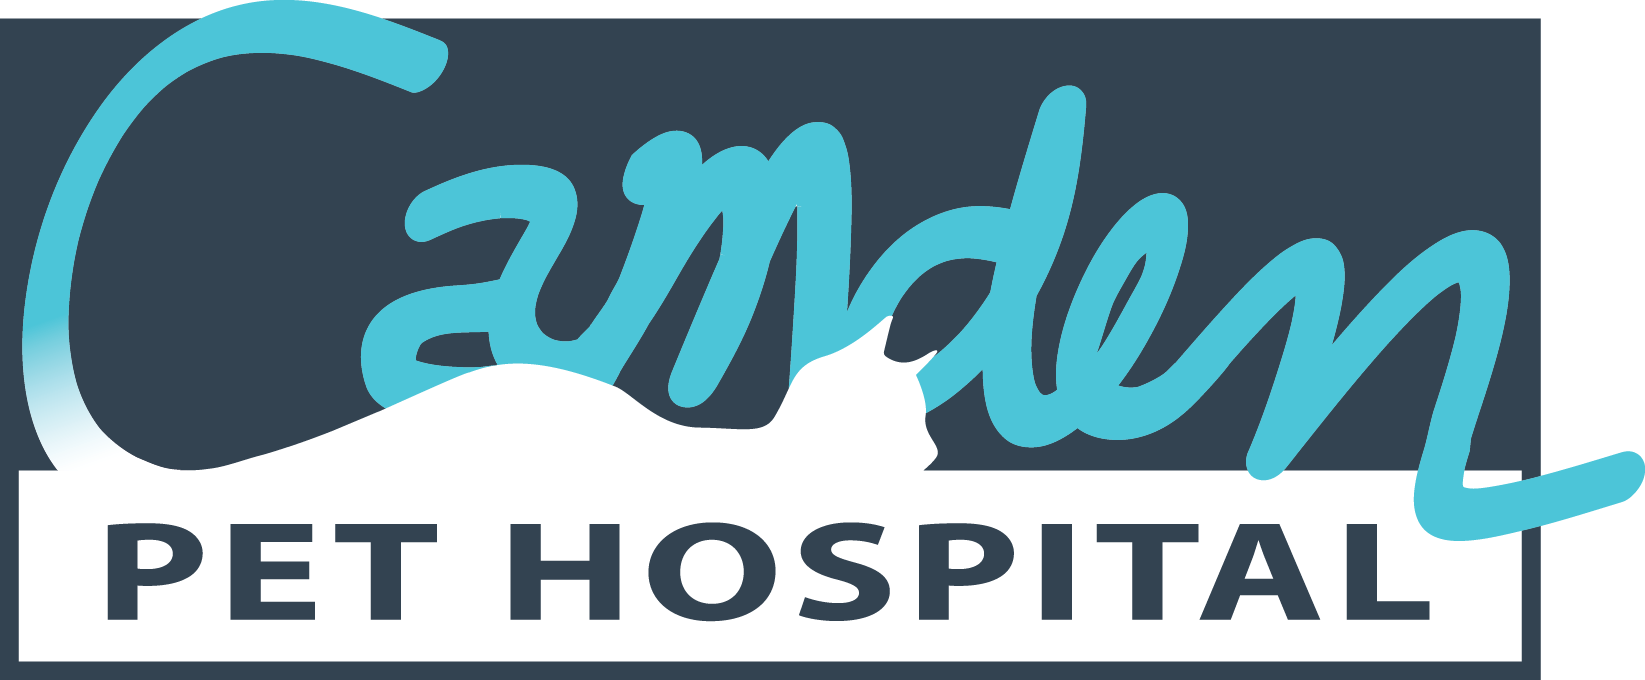 Camden Pet Hospital Logo